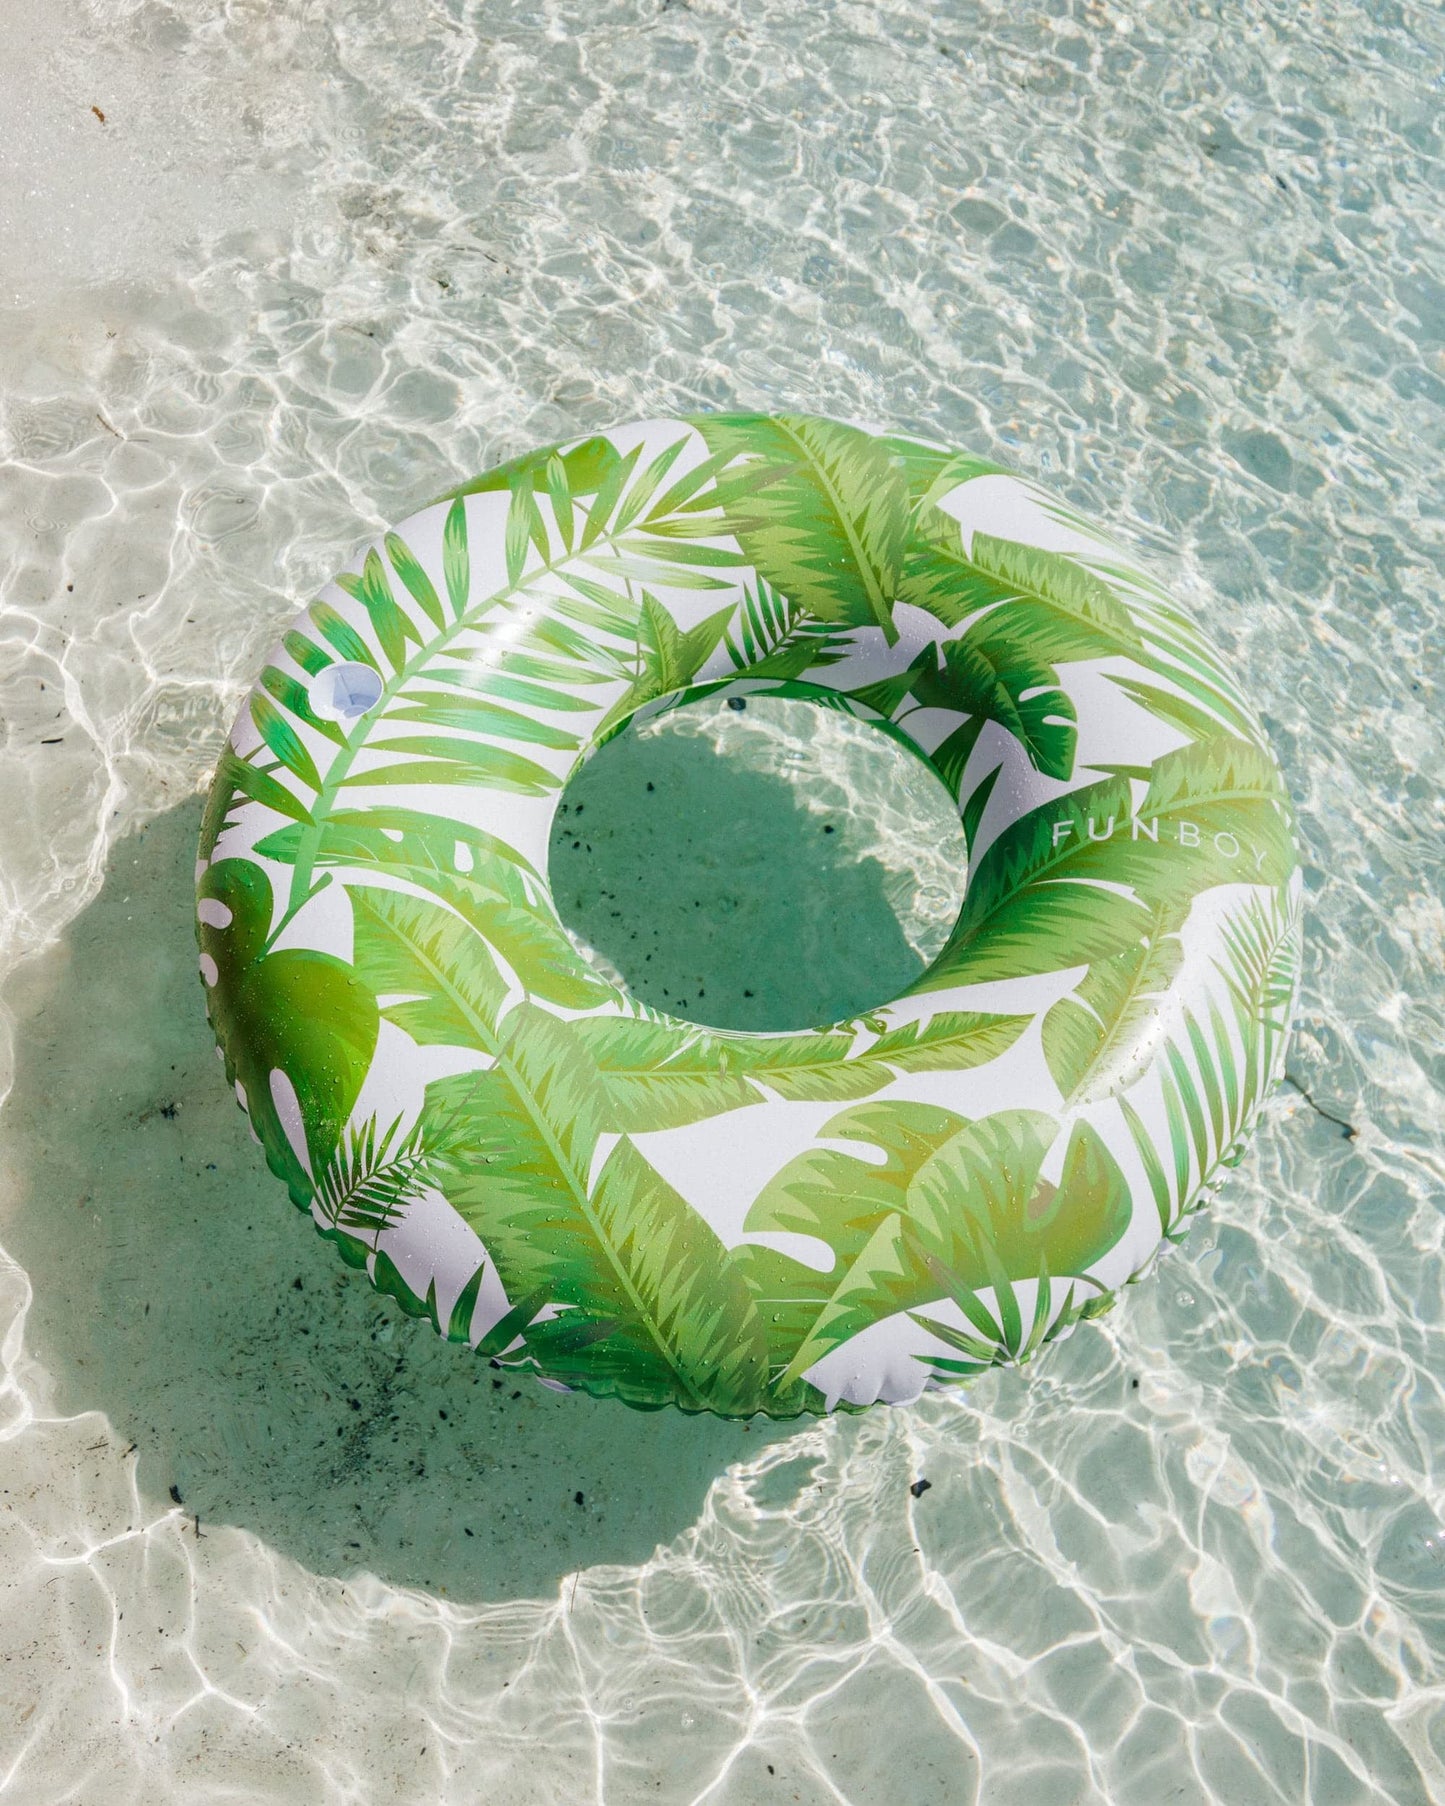 FUNBOY Flotteur gonflable géant en feuille de palmier tropical, radeau de luxe pour les fêtes de piscine et les divertissements en été, lot de 2 feuilles tropicales.